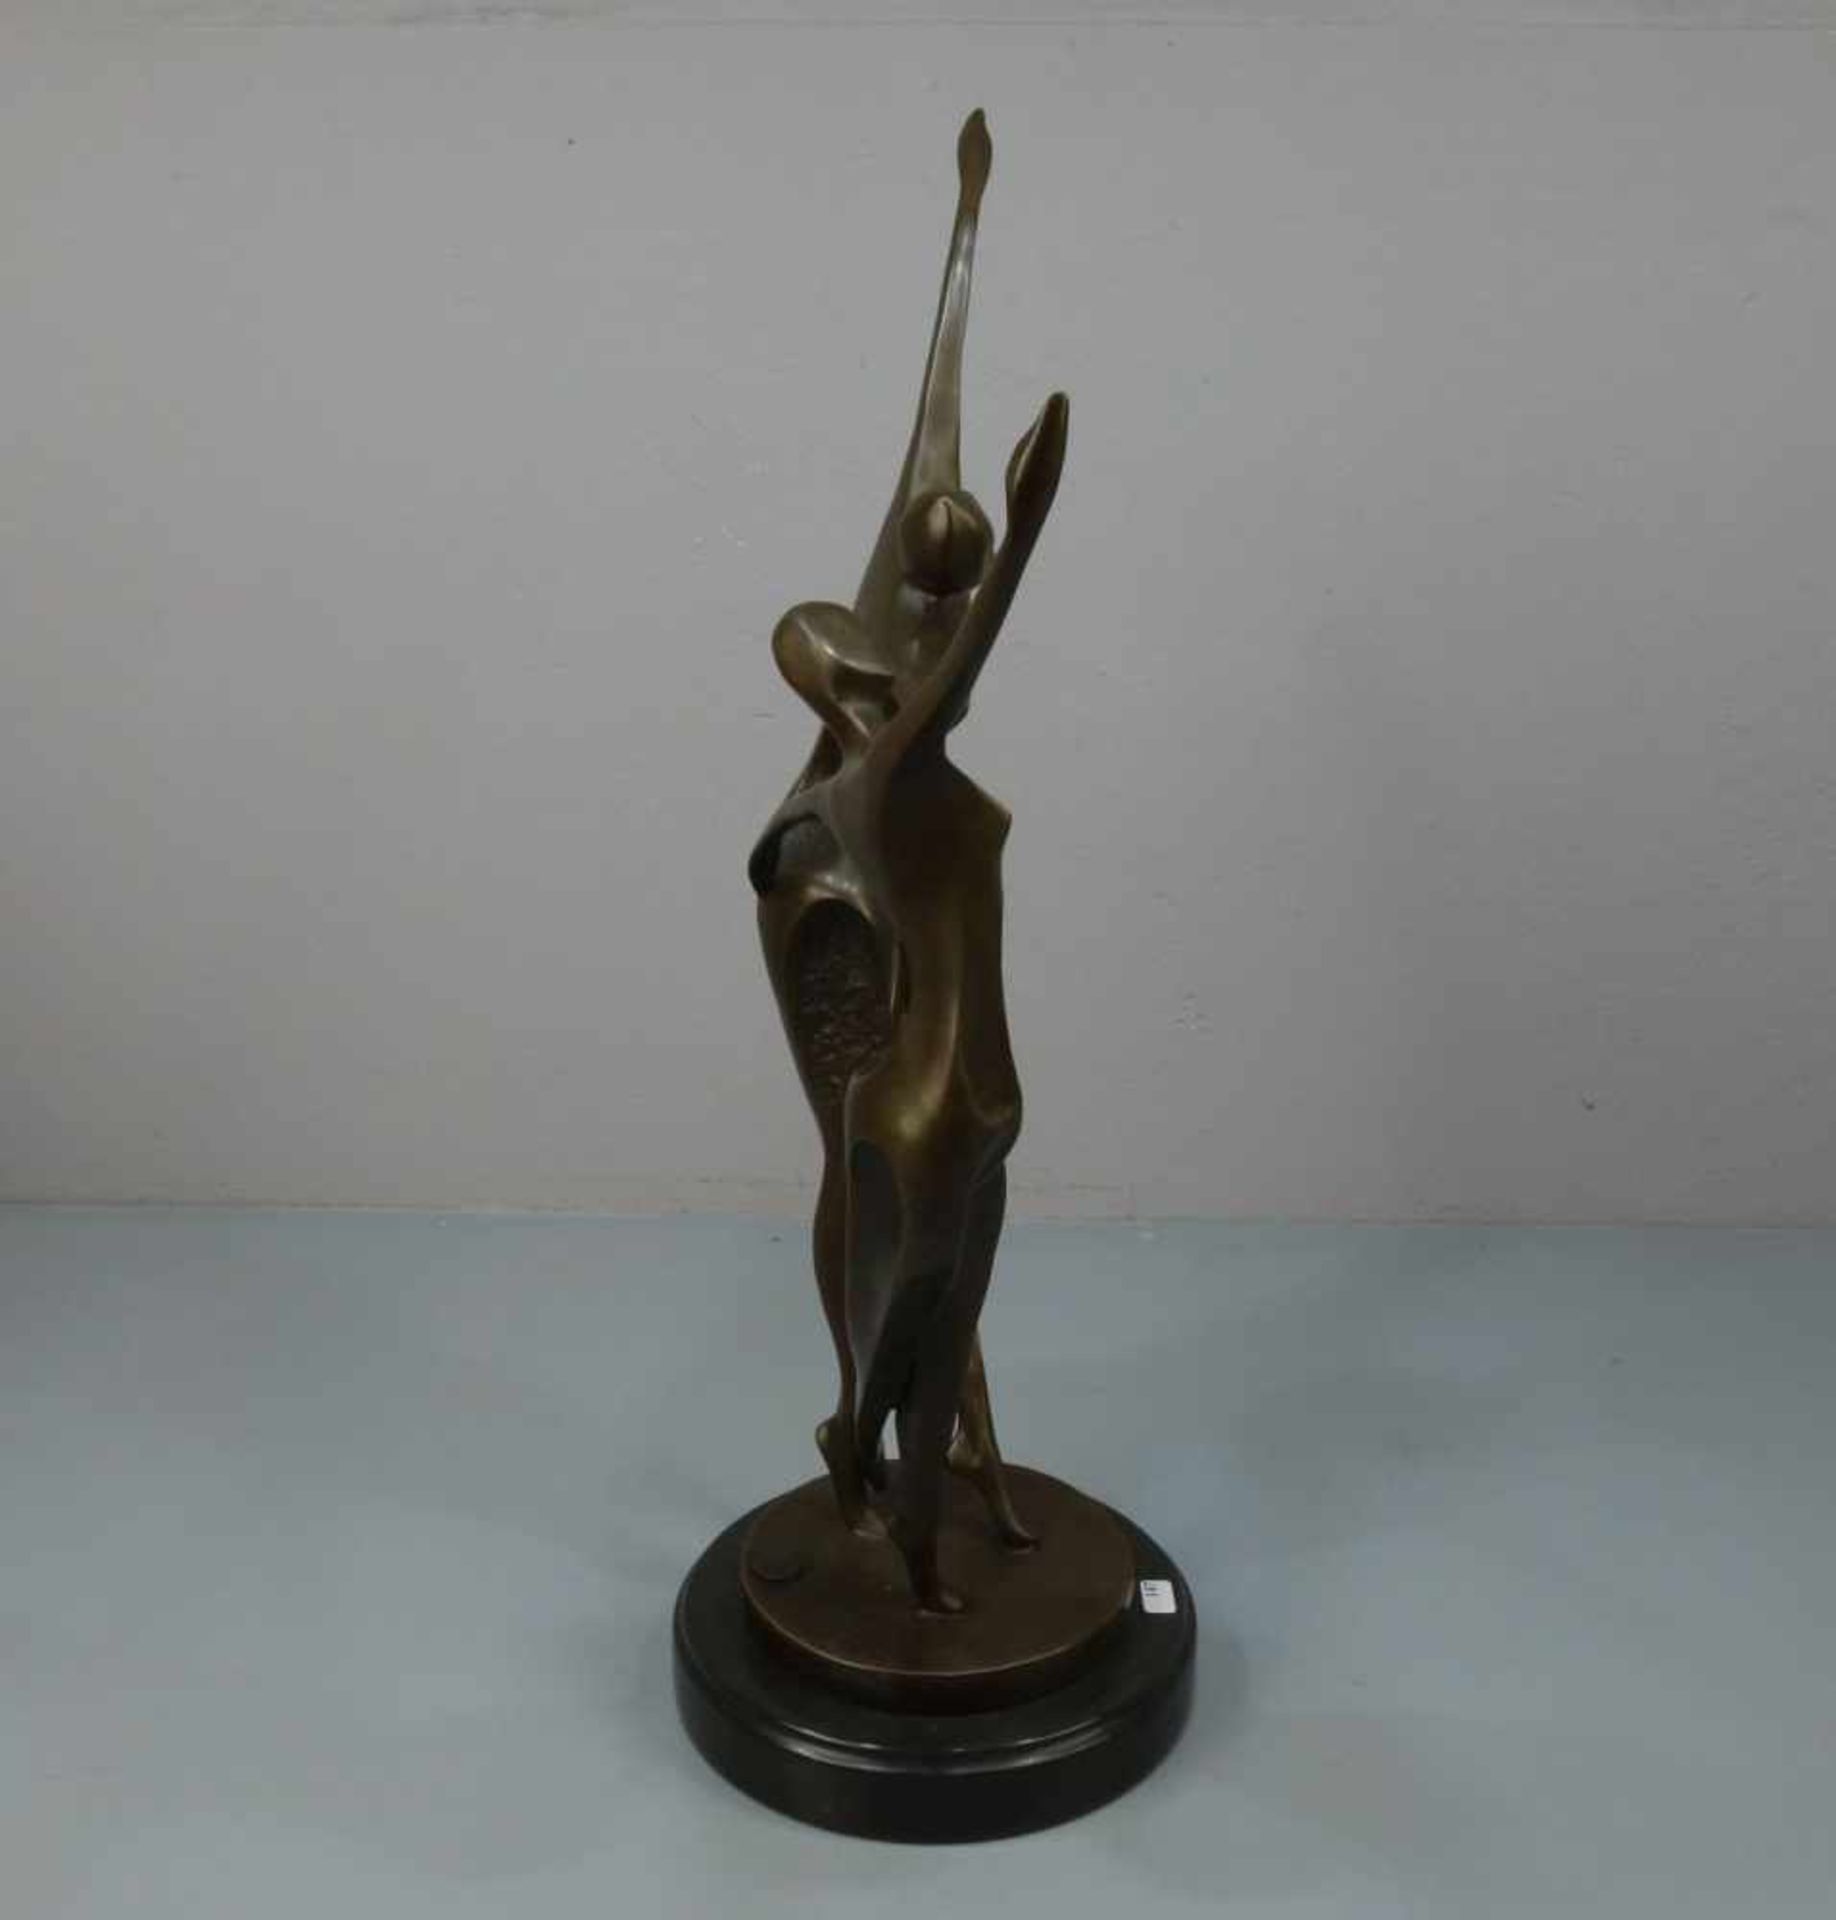 LOPEZ, MIGUEL FERNANDO (auch Milo, geb. 1955 in Lissabon), Skulptur / sculpture: "Tanzendes Paar", - Image 4 of 6